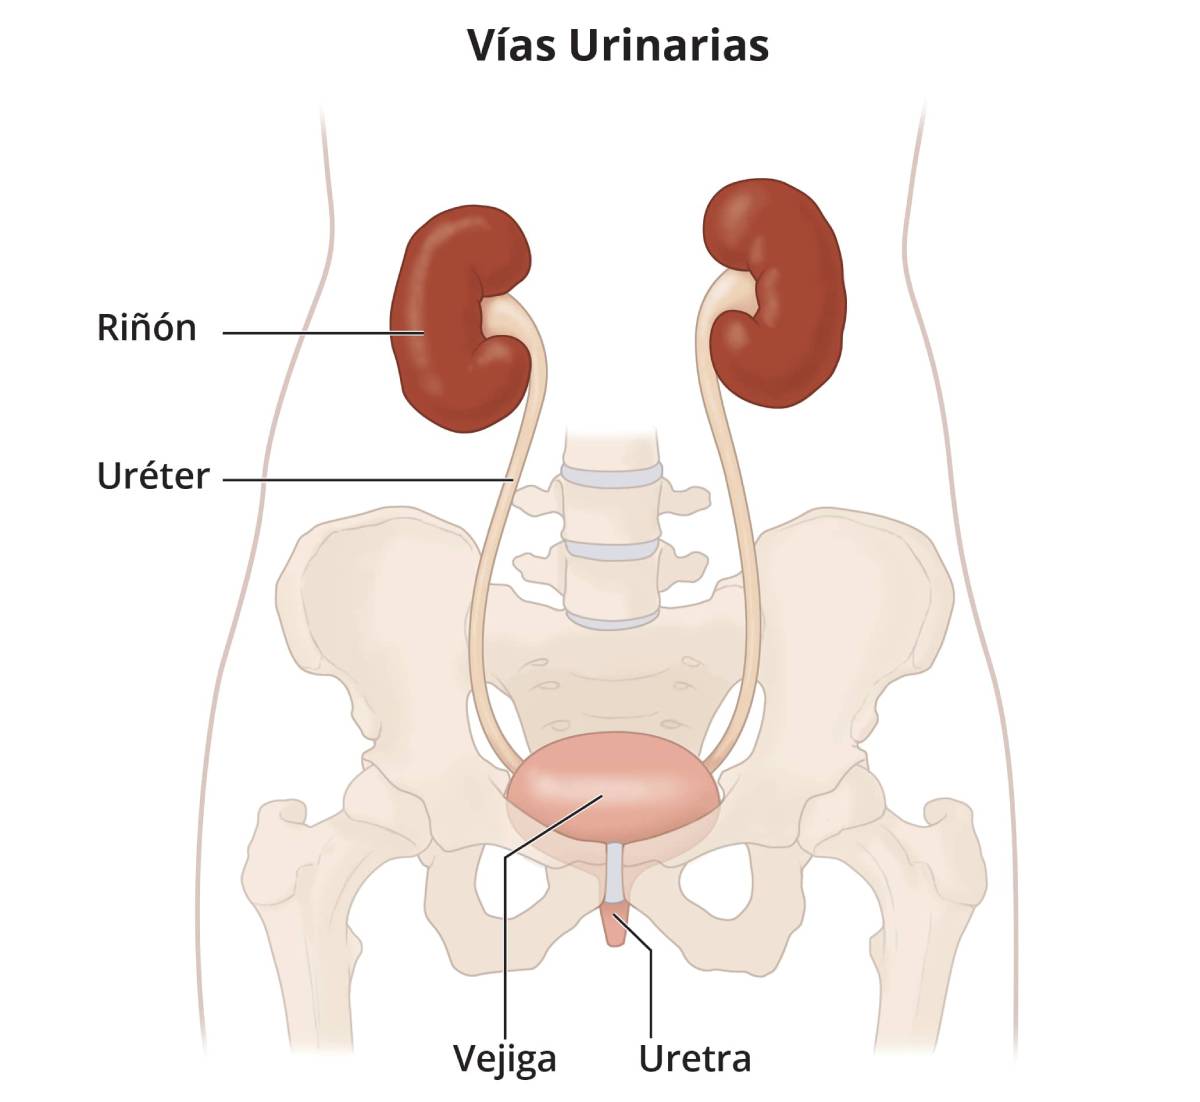 Vías urinarias, que incluyen los riñones, los uréteres, la vejiga y la uretra.